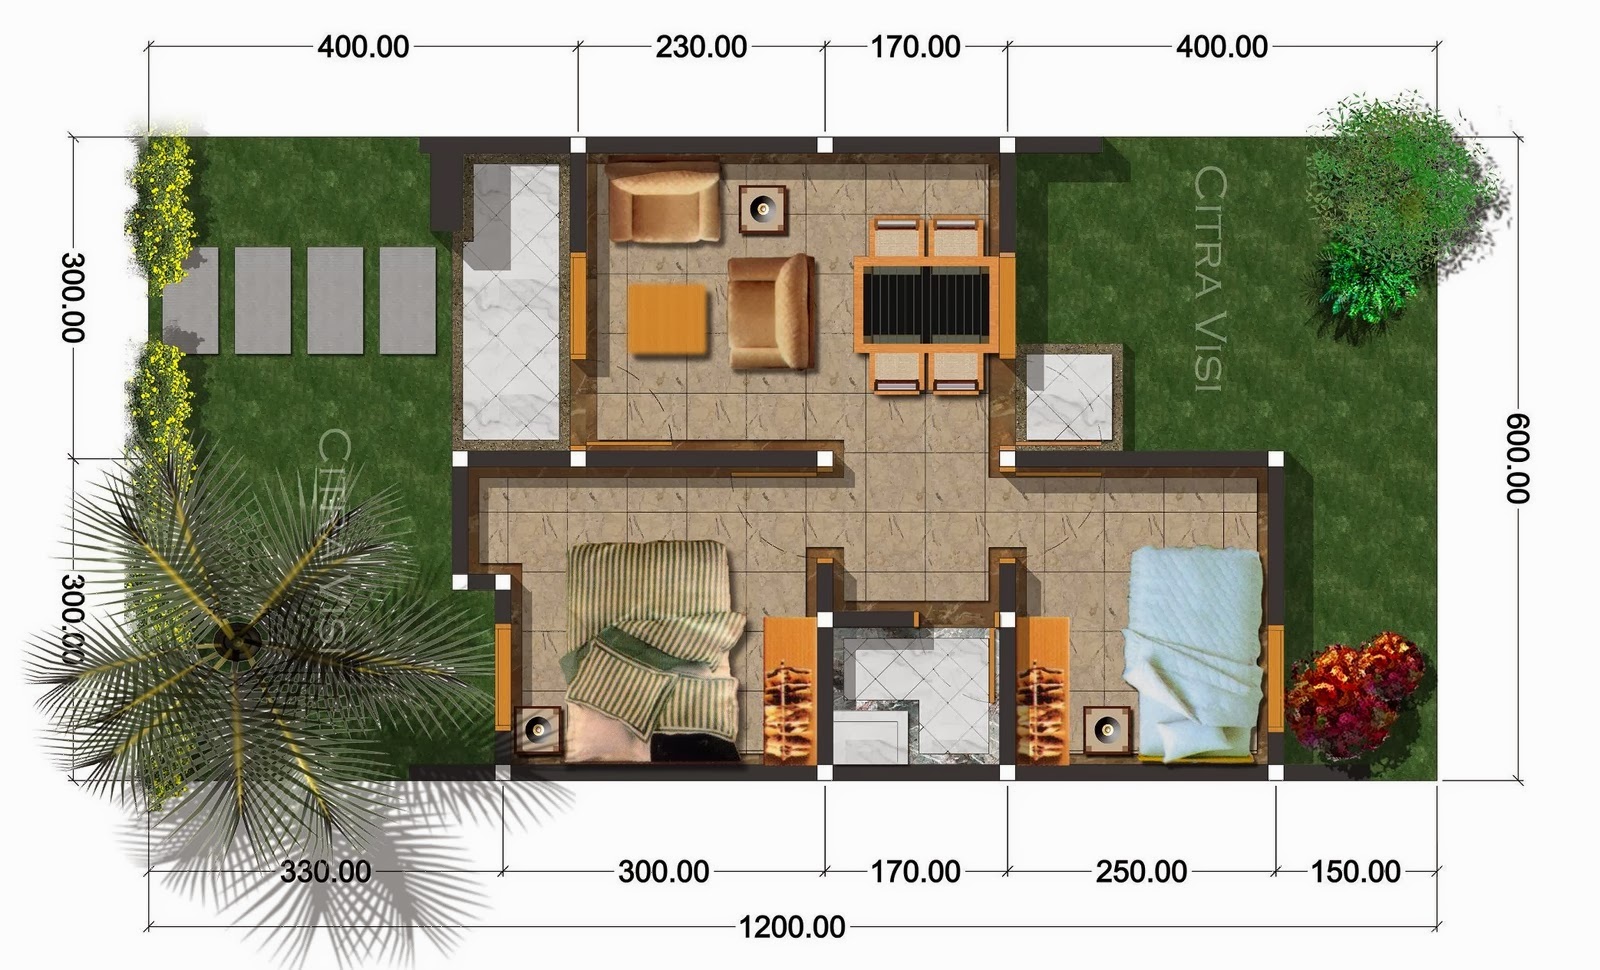 62 Desain  Rumah  Minimalis  Ukuran  6x14  Desain  Rumah  